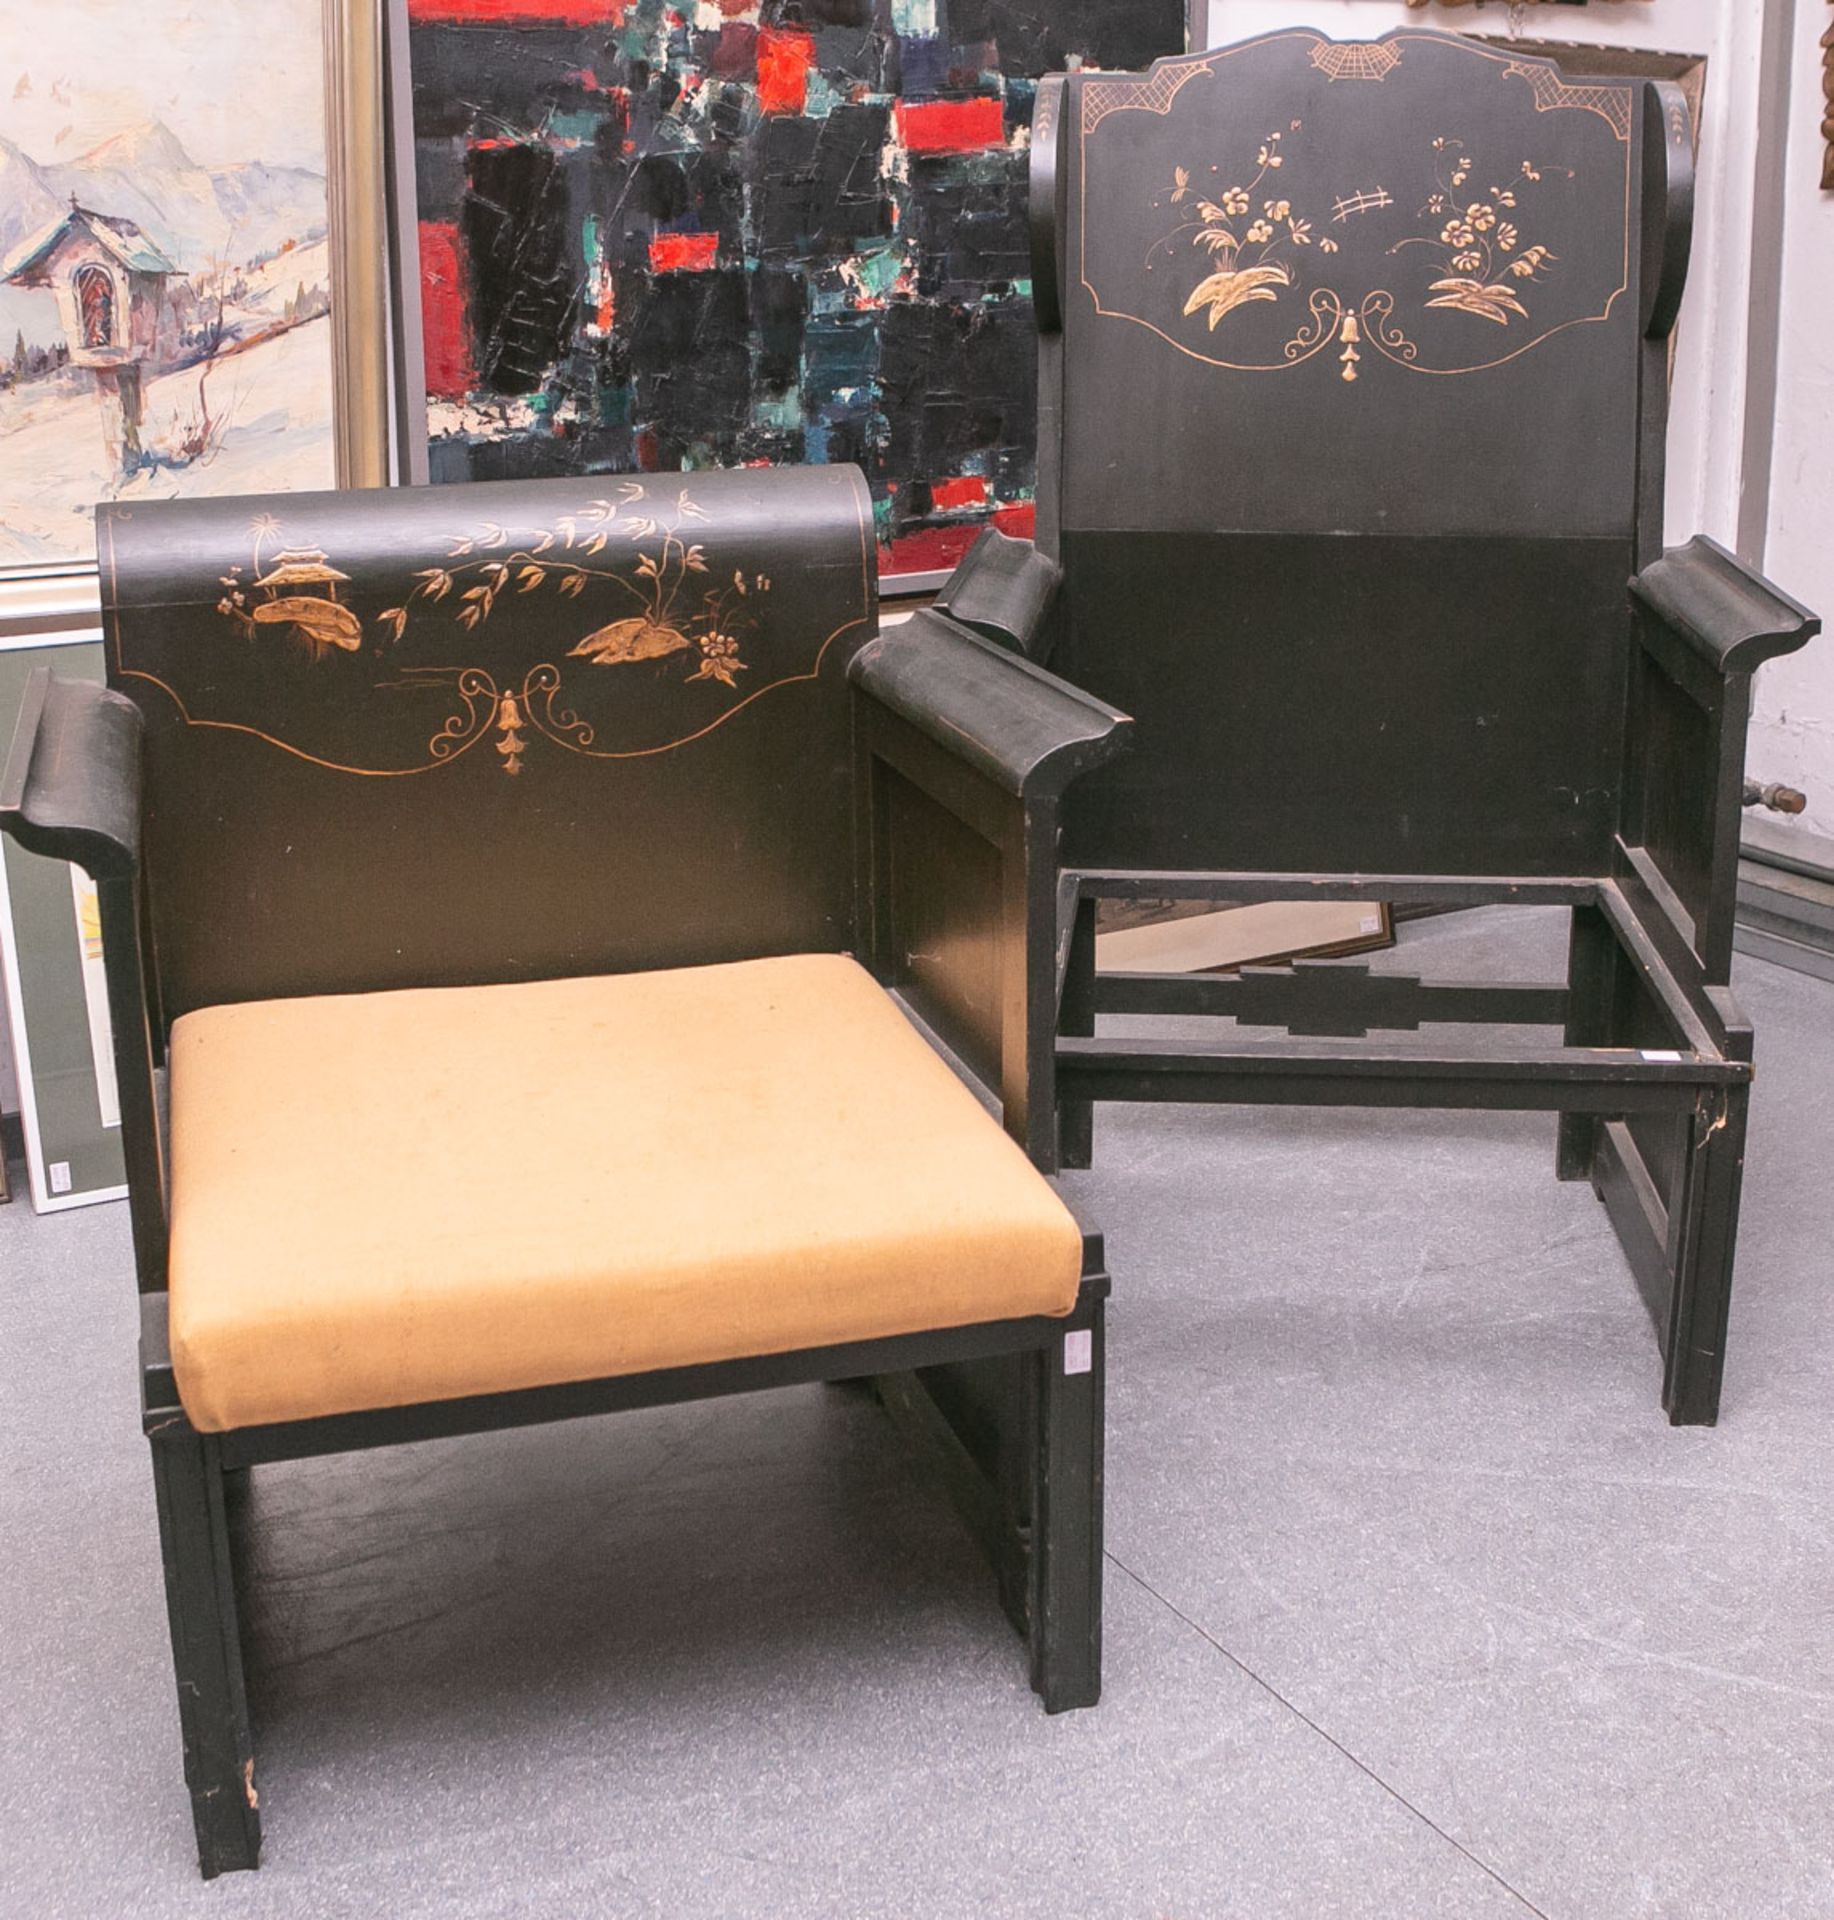 2 Stühle (China, Alter unbekannt), schwarz bemalt, m. farbigem u. goldenen Blumendekor, 1x 116 x